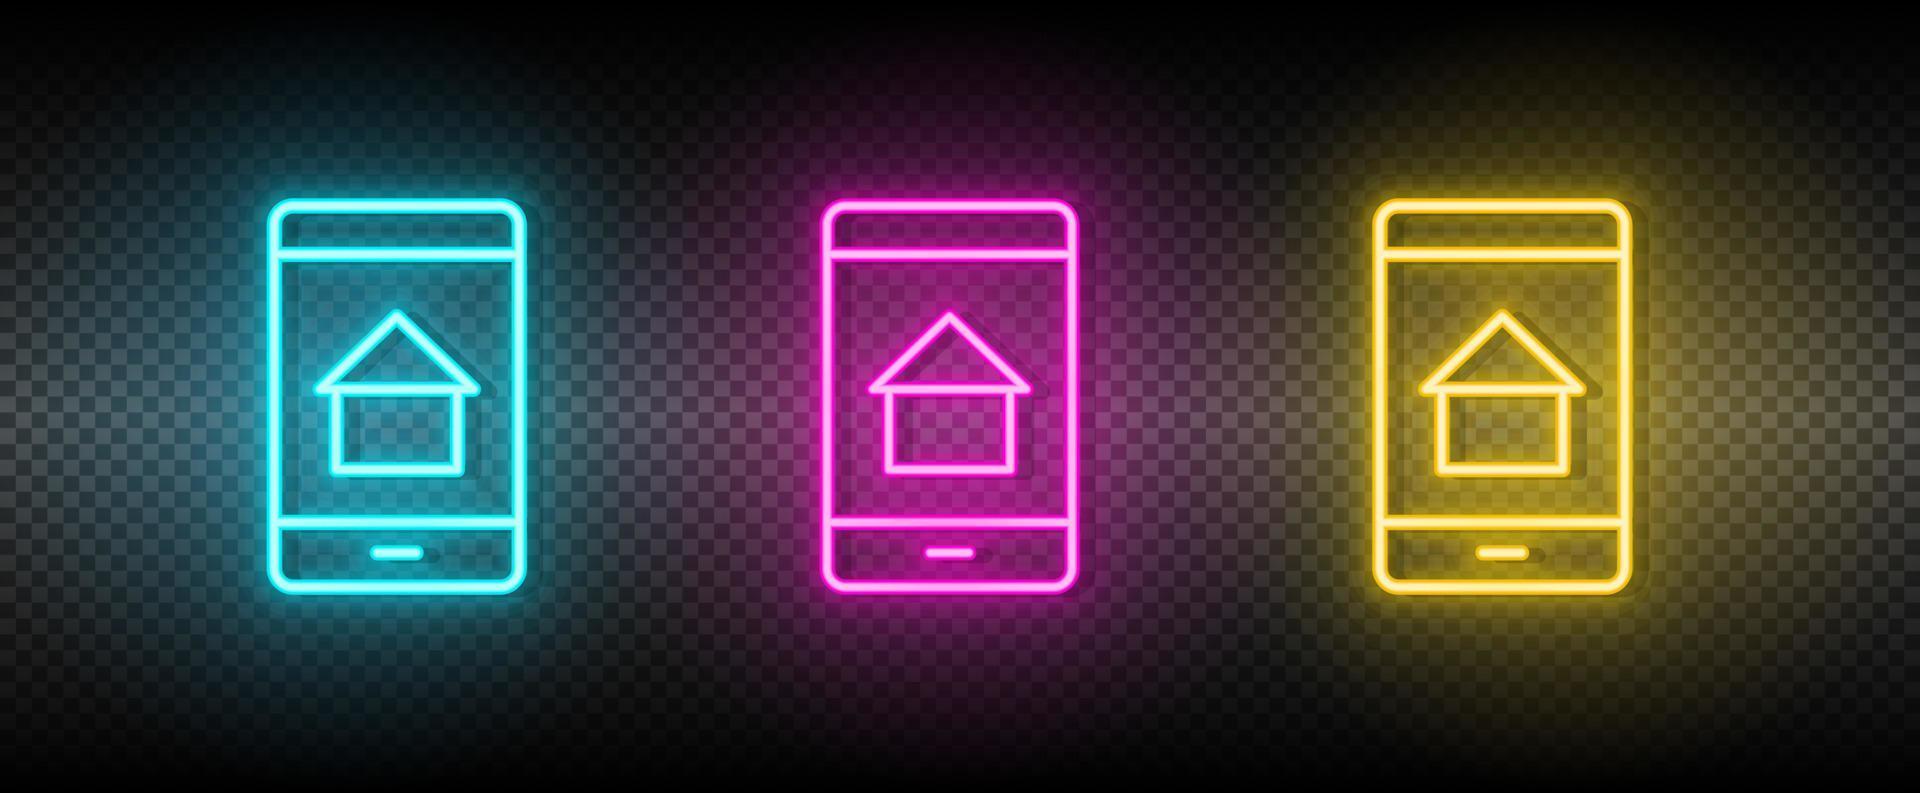 real inmuebles vector aplicación, casa, móvil. ilustración neón azul, amarillo, rojo icono conjunto